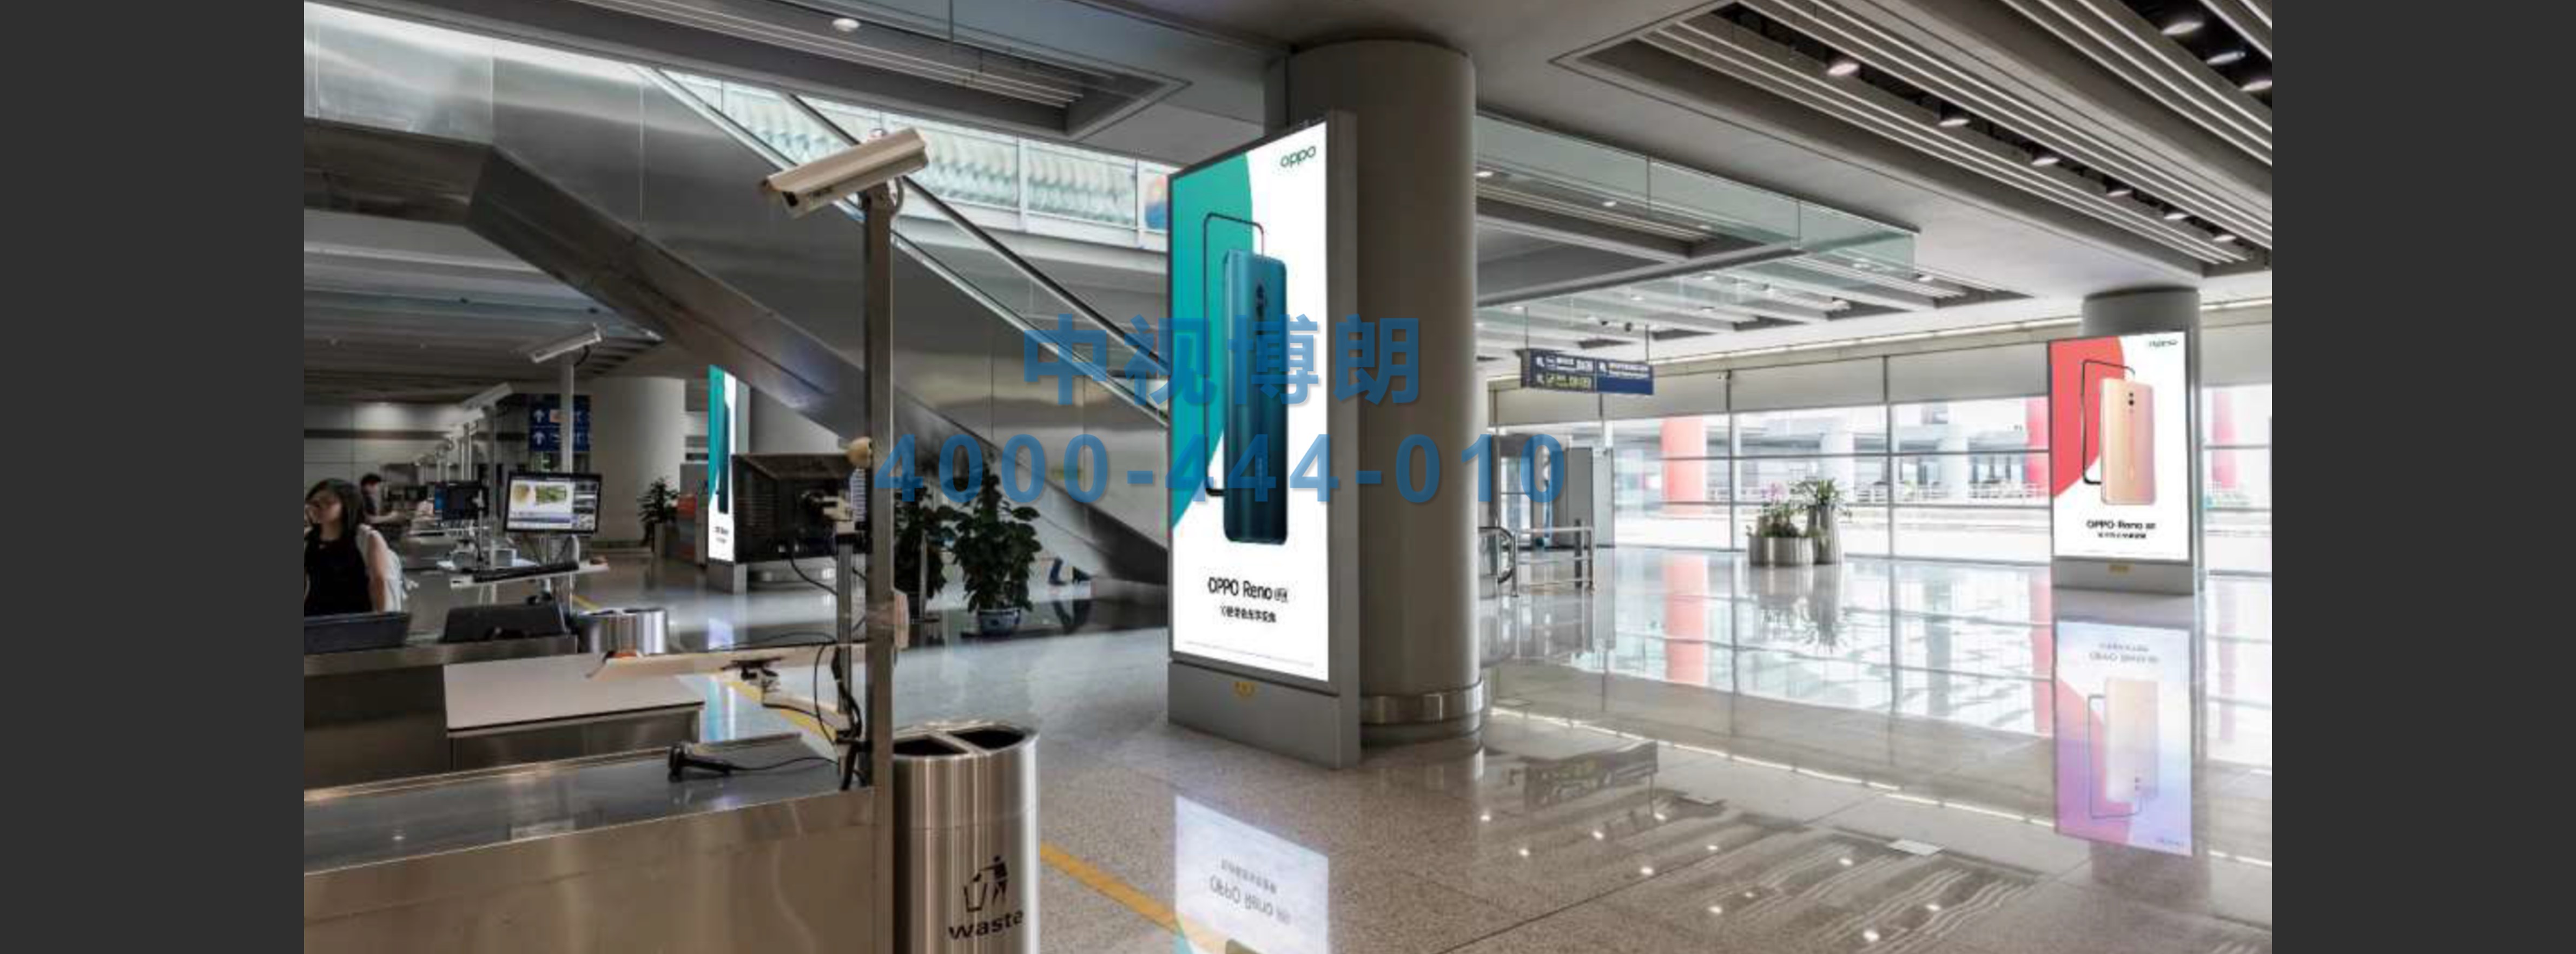 北京首都机场广告-T3安检后成对图腾柱灯箱03-04